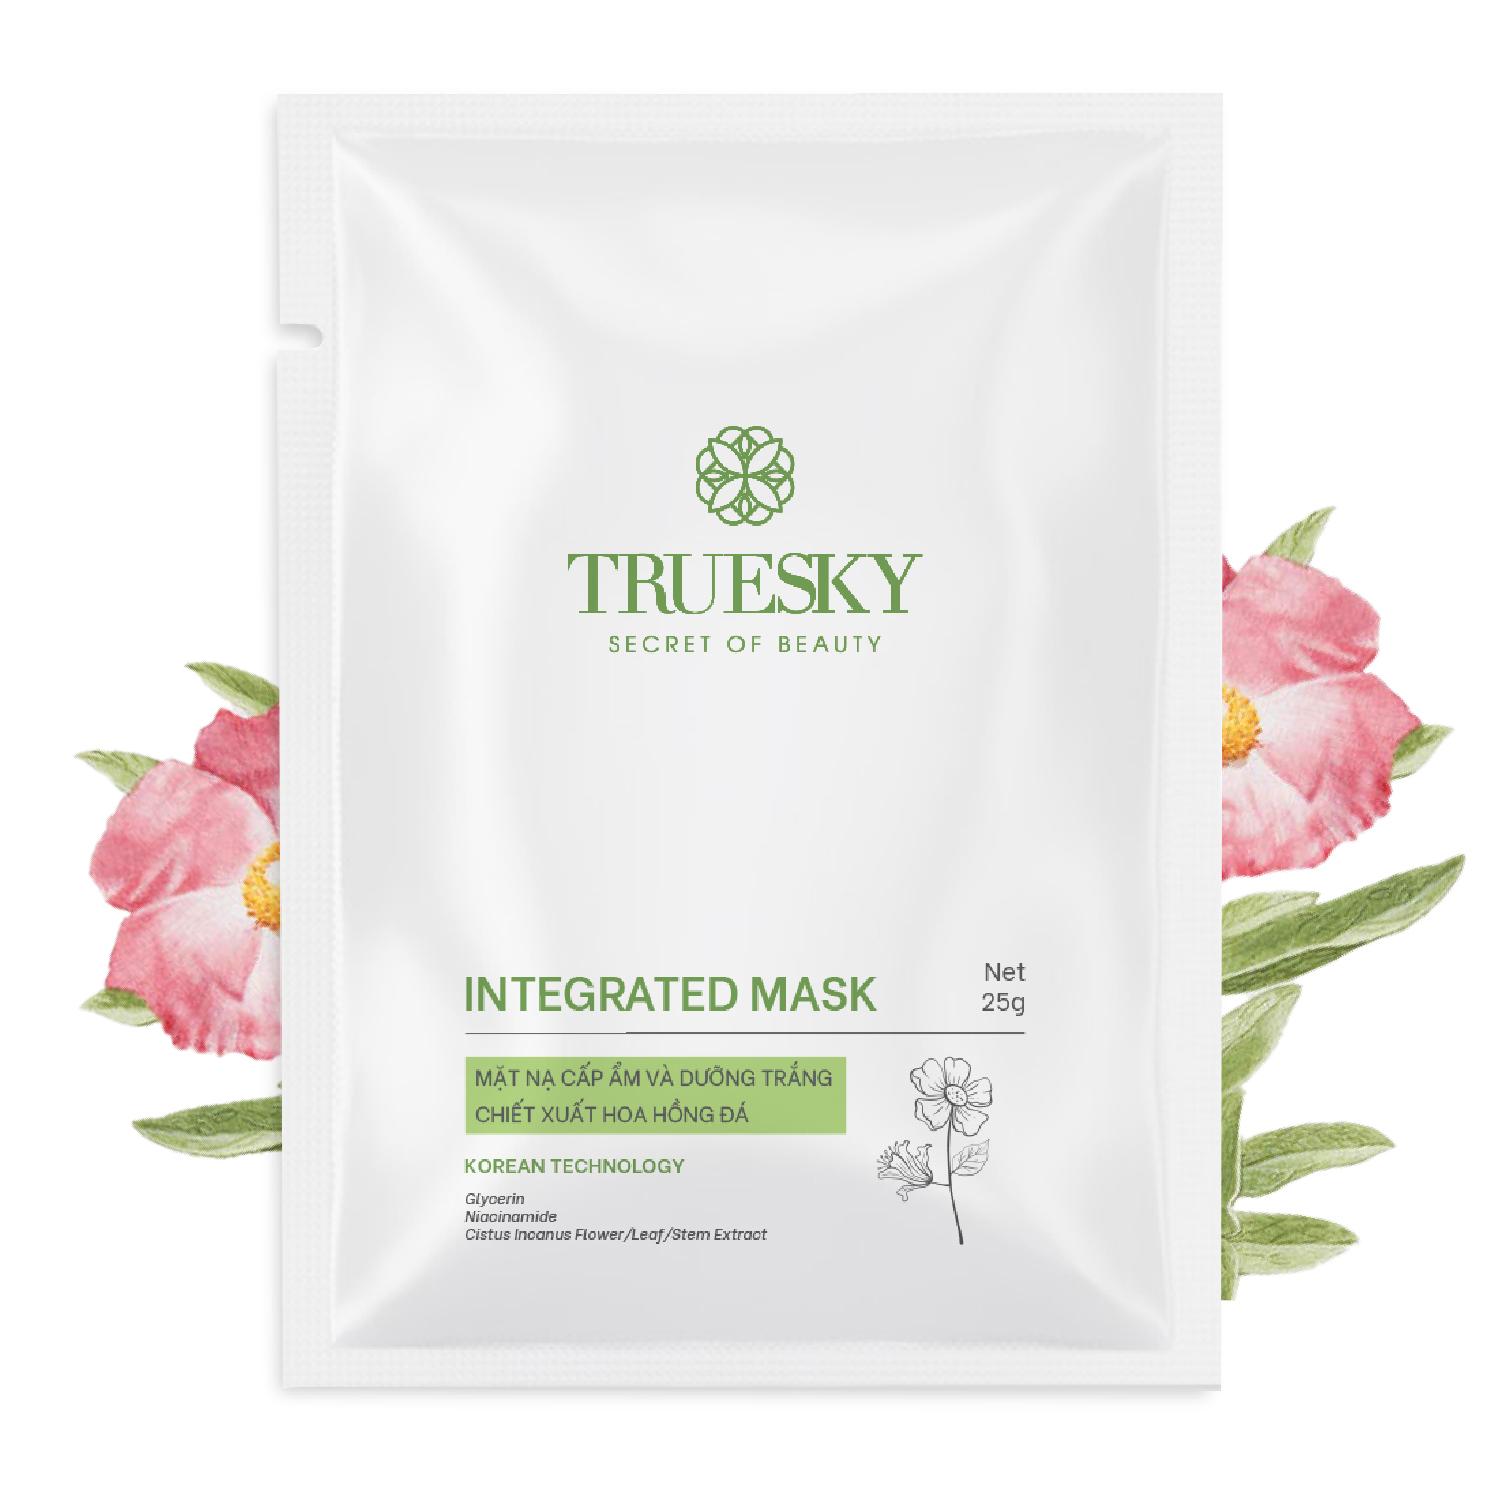 Mặt nạ dưỡng trắng da và ngăn ngừa lão hoá Truesky Integrated Mask chiết xuất hoa hồng đá 25g